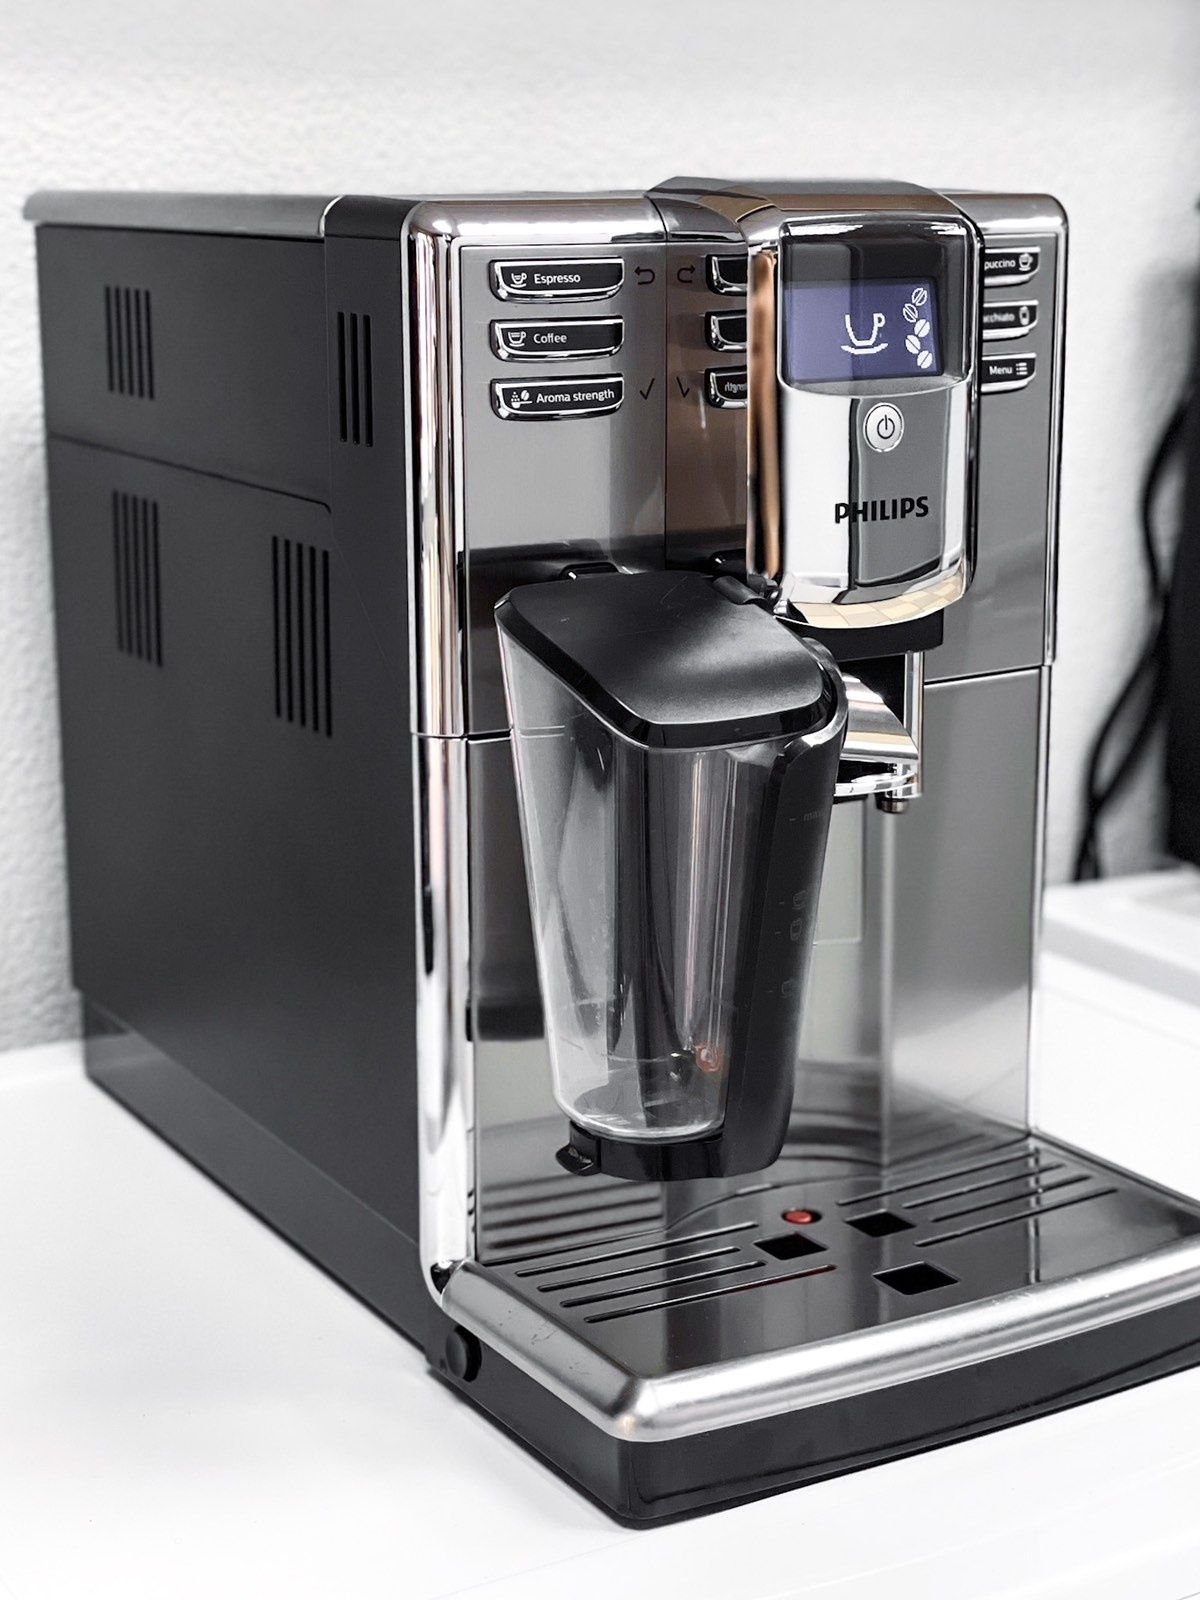 ТОП!!! Кофемашина Philips Incanto LatteGo (кавоварка)